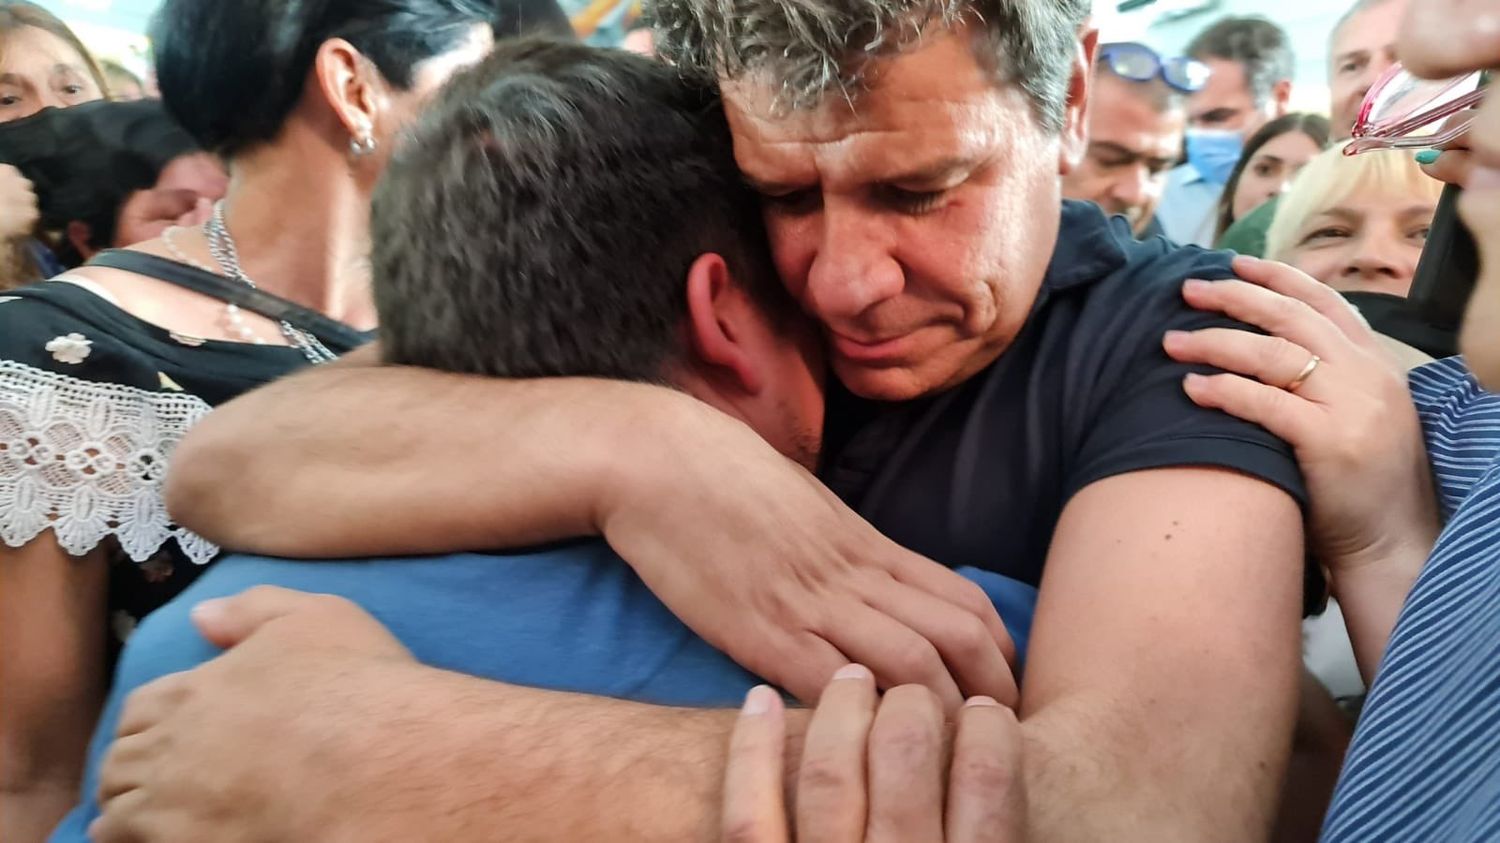 Crimen del kiosquero: Manes publicó una foto “abrazando el dolor” y le dijeron “oportunista y chanta”